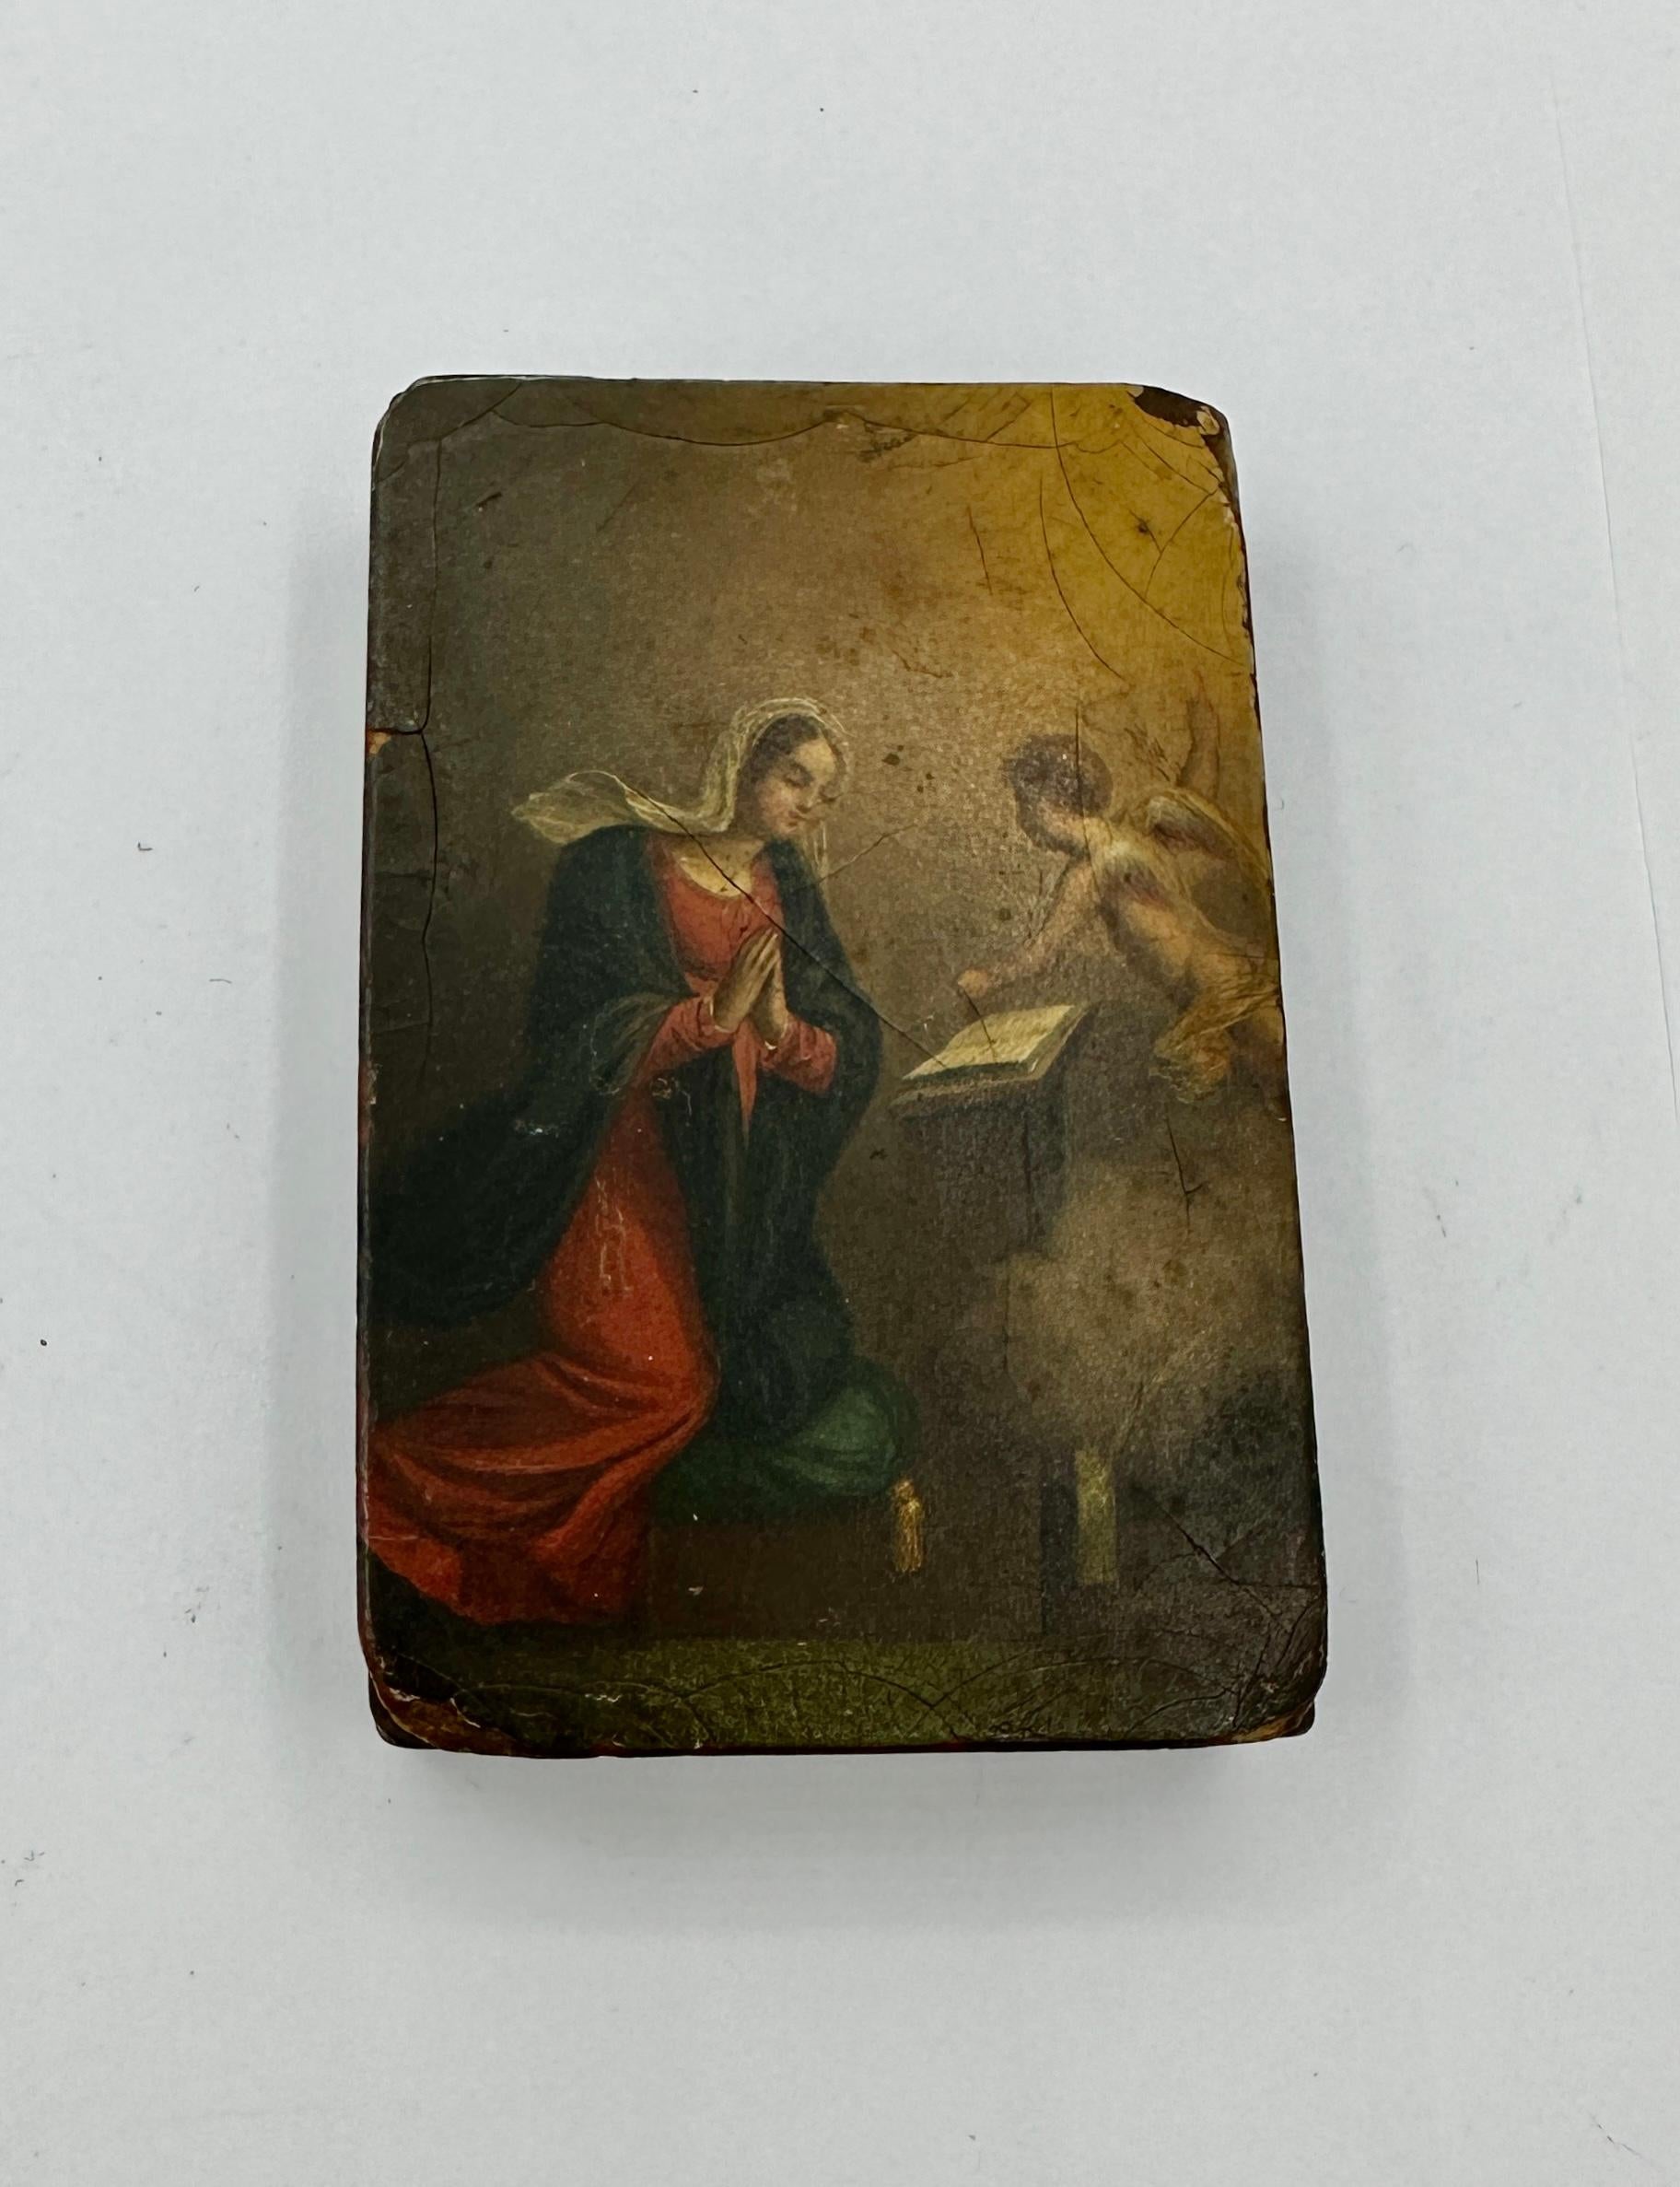 Dies ist eine wunderbare und seltene antike Schachtel aus dem 18. bis 19. Jahrhundert mit einer außergewöhnlichen handgemalten Portraitminiatur der Verkündigung mit Maria und dem Engel Gabriel.   Es zeigt den Engel Gabriel, der Maria verkündet, dass